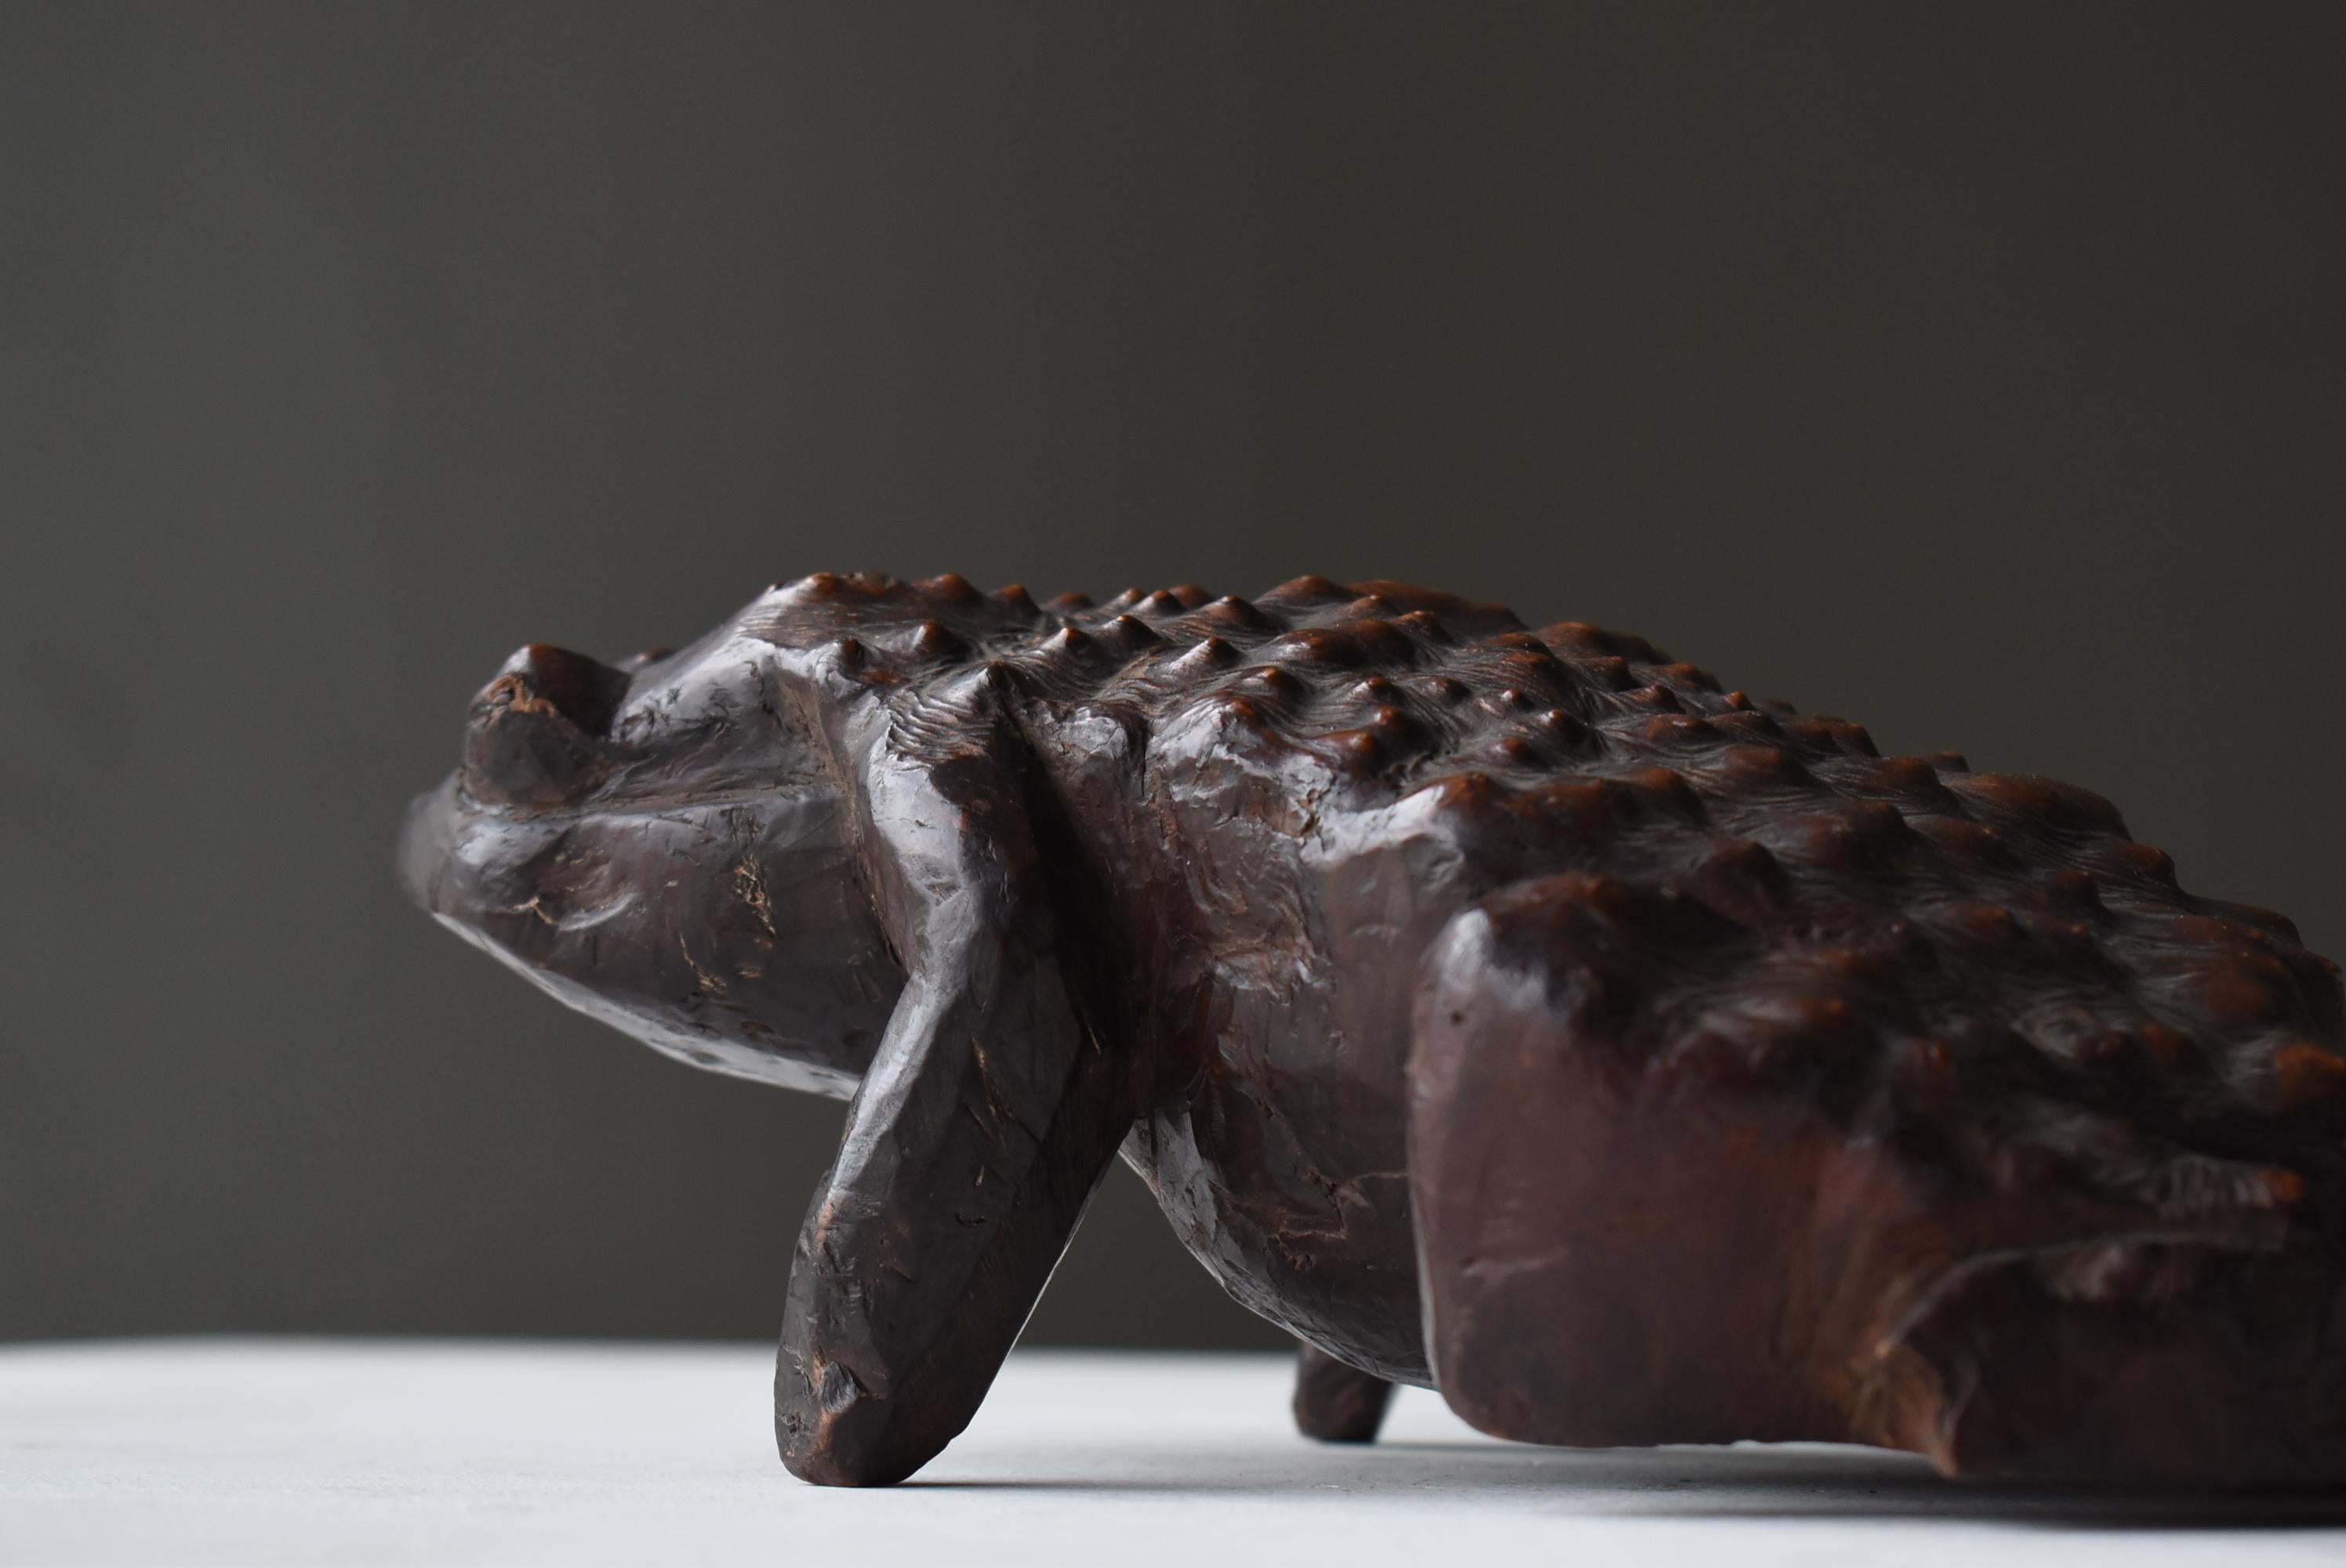 Japanese Antique Wood Carving Frog 1900s-1940s / Sculpture Wabi Sabi  For Sale 5